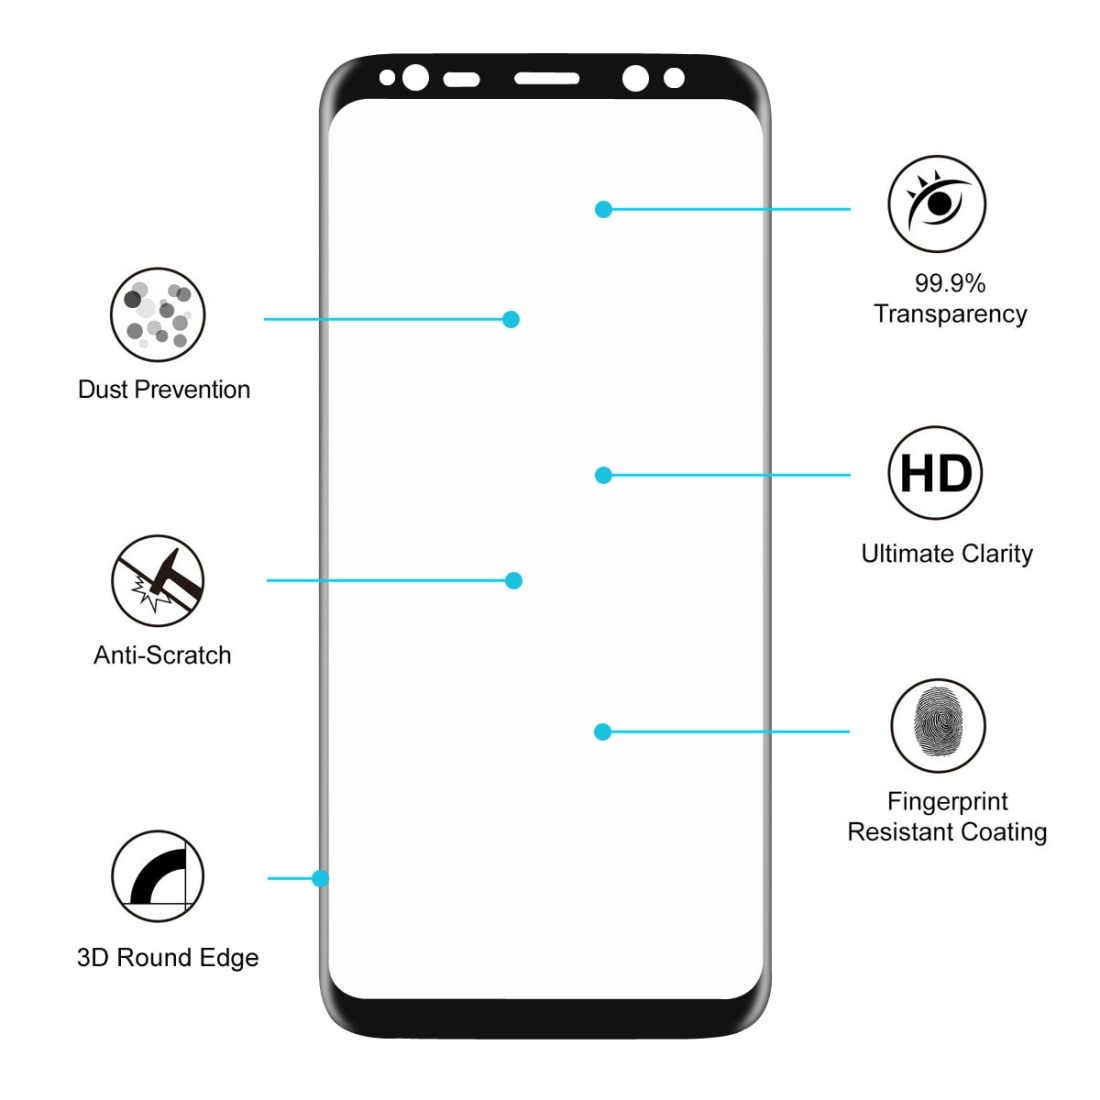 Näytönsuoja Etu + Taka Samsung Galaxy S8 - Koko näytön suoja kattaa reunat